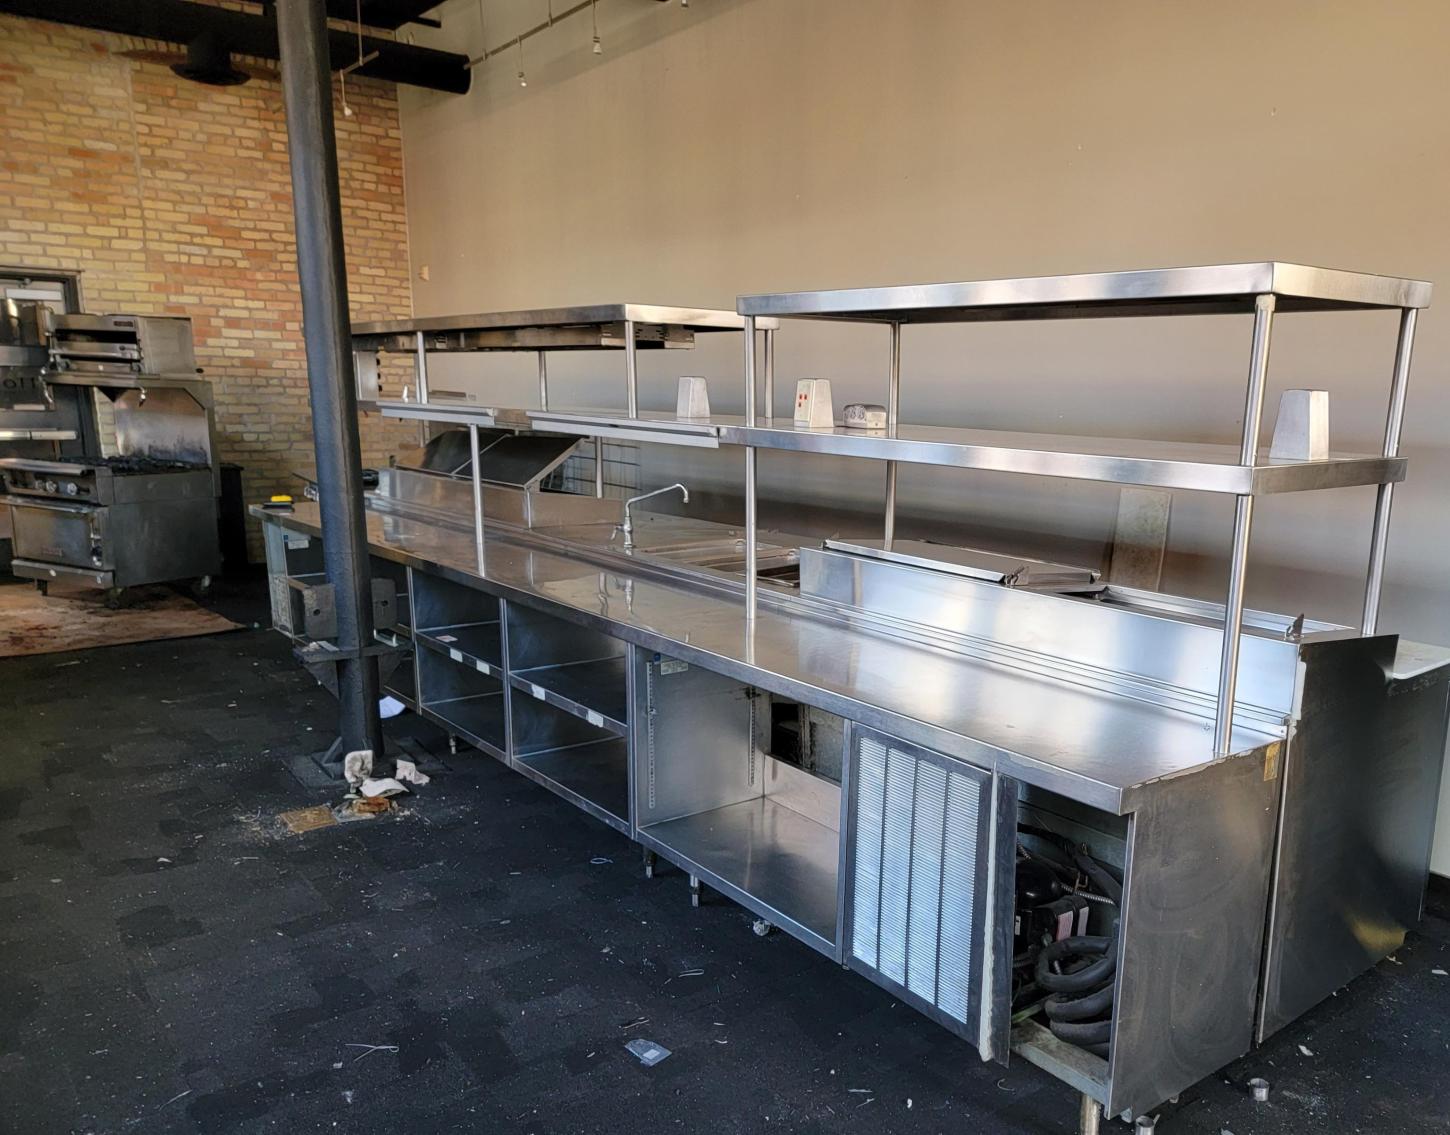 Hot Dog Stand & Surplus Restaurant Equipment: Fargo, ND